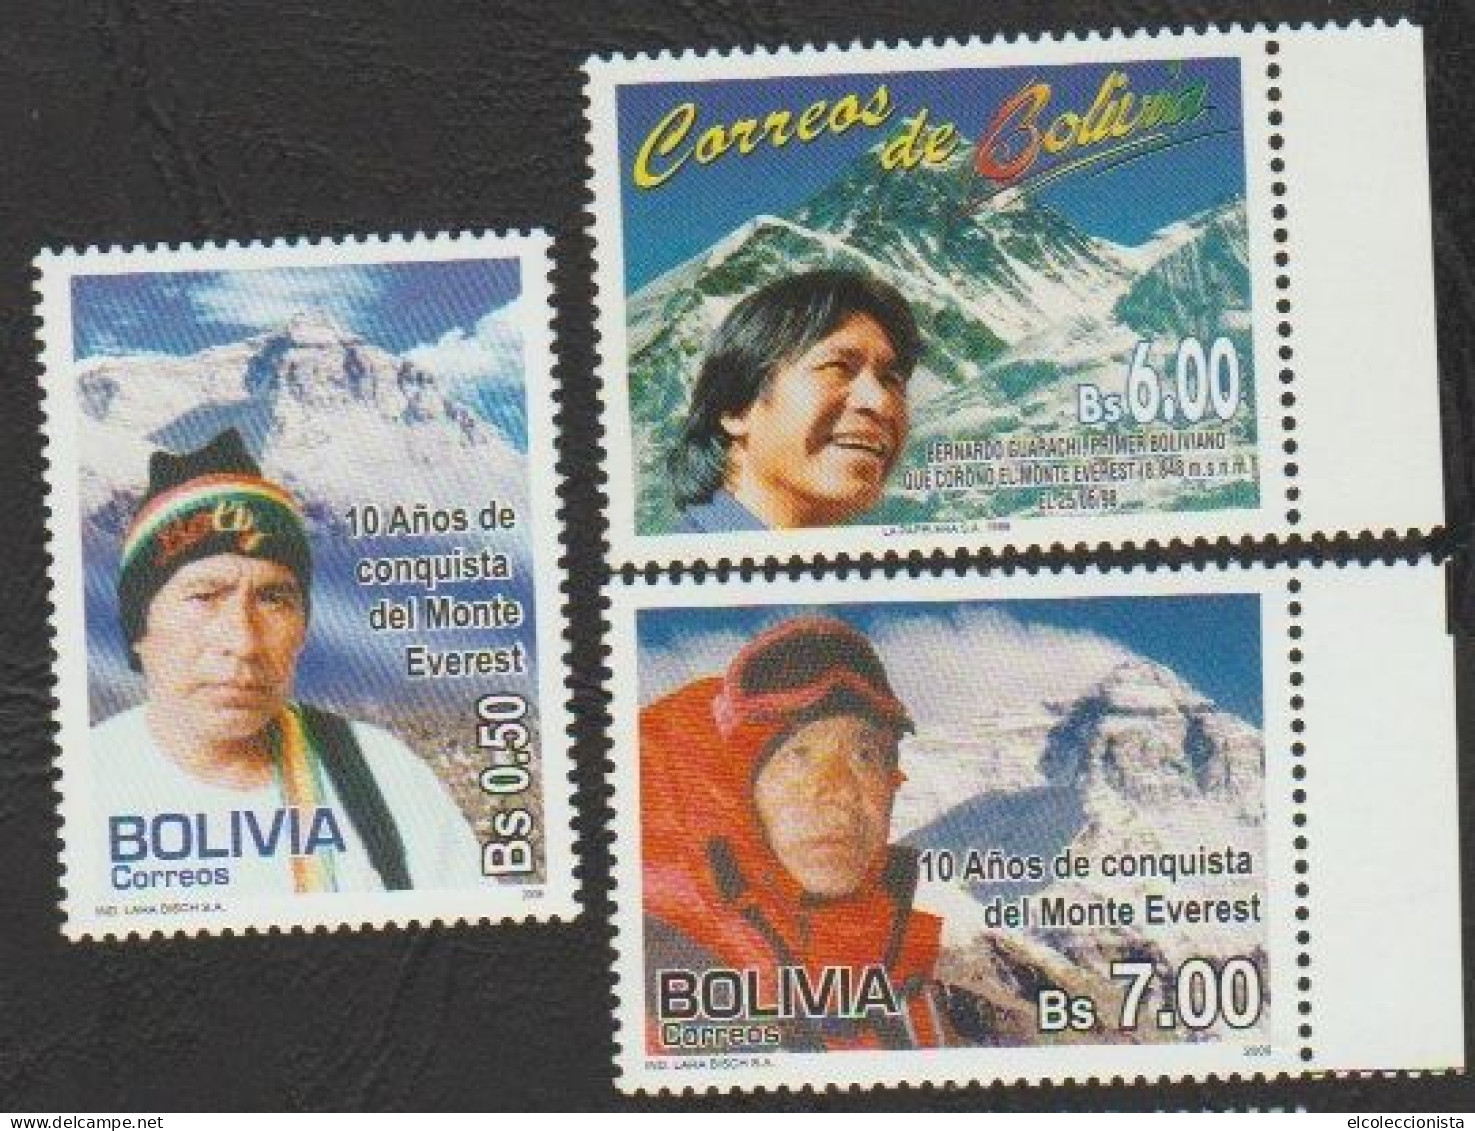 1999-2009 Bolivia Bernardo Guarachi Climber Mt. Everest MNH Scott 1056 1405 1406 - Bolivie